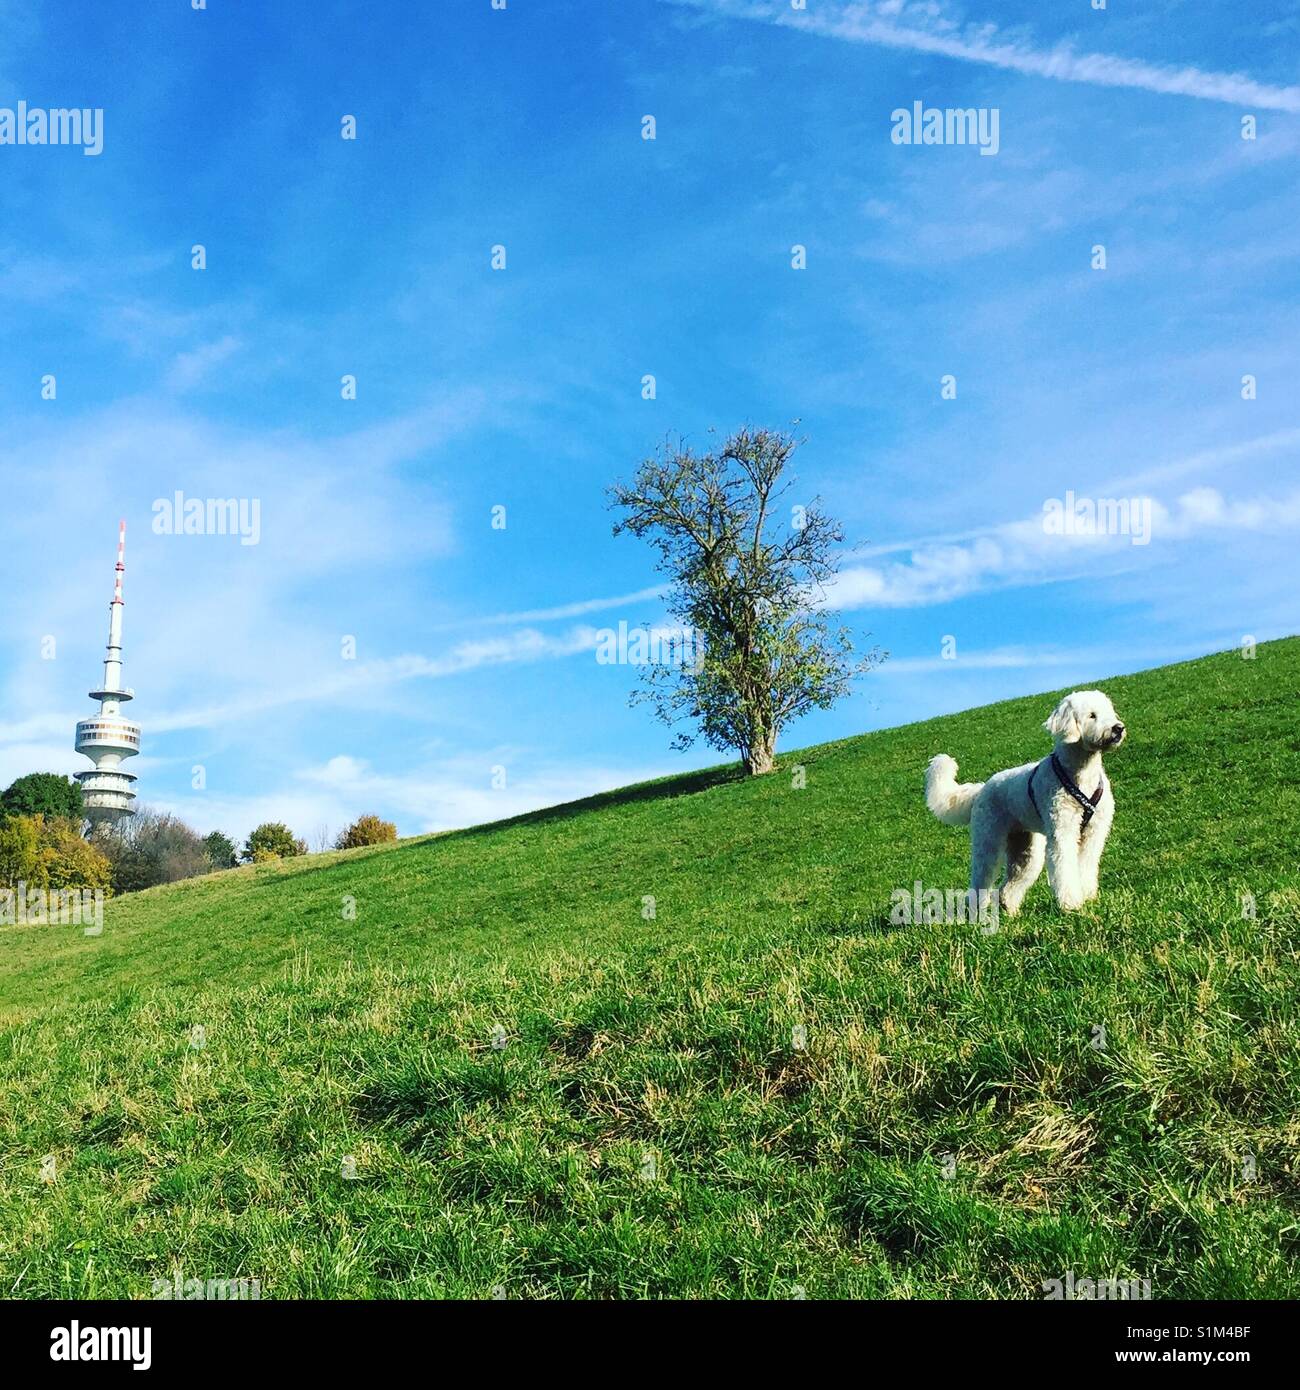 Goldendoodle, weisser Hund steht majestätisch, Stolz, aufmerksam, Olympiaberg, Gras blauem grünes und vor Himmel, en München, Bayern, Olympiaturm im Hintergrund und einem Baum, Etiqueta windiger dahinter Foto de stock